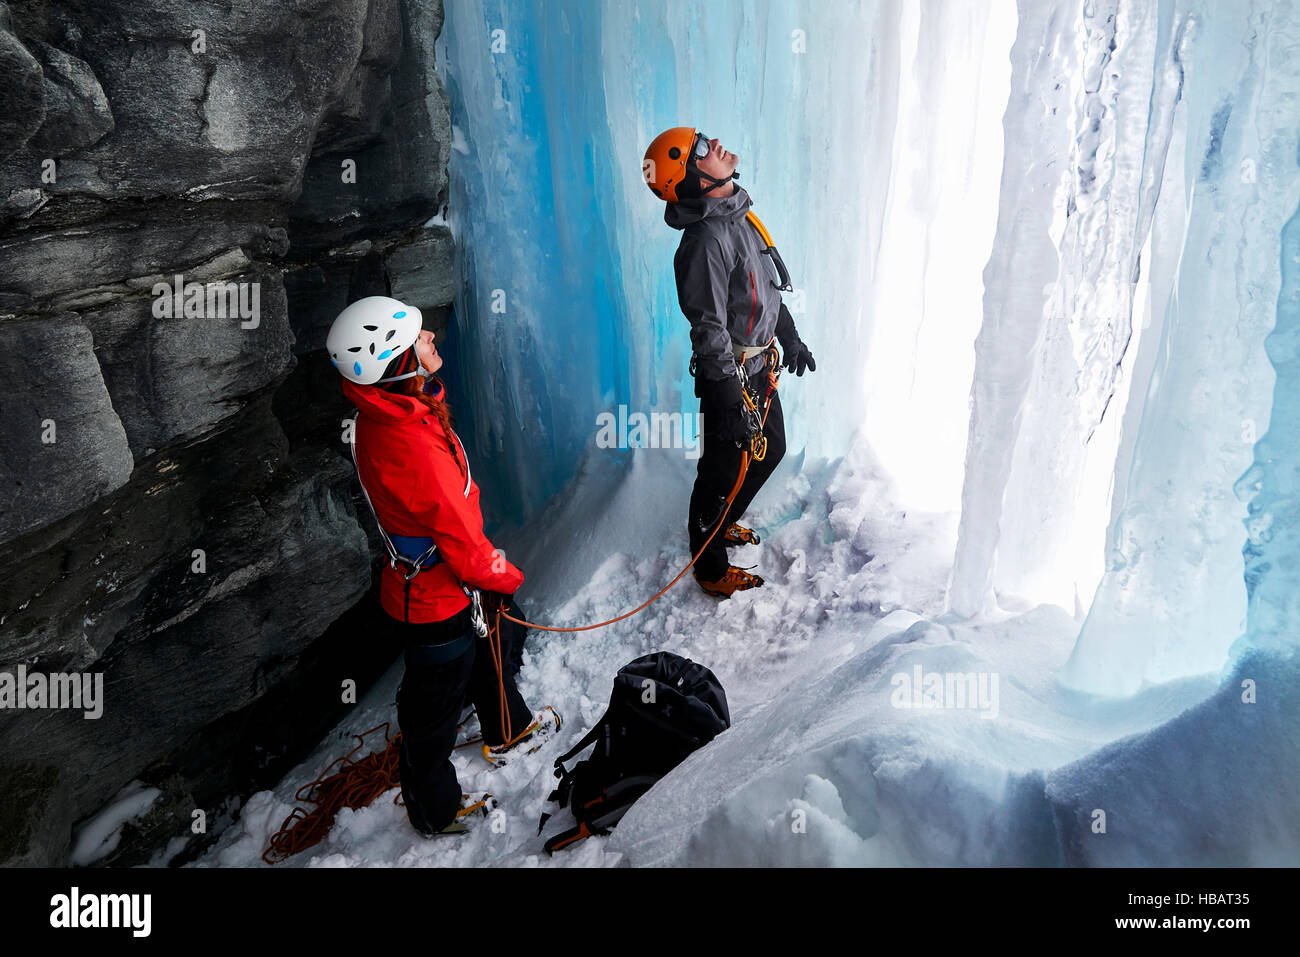 Par en la cueva de escalada en hielo, Saas Fee, Suiza Foto de stock